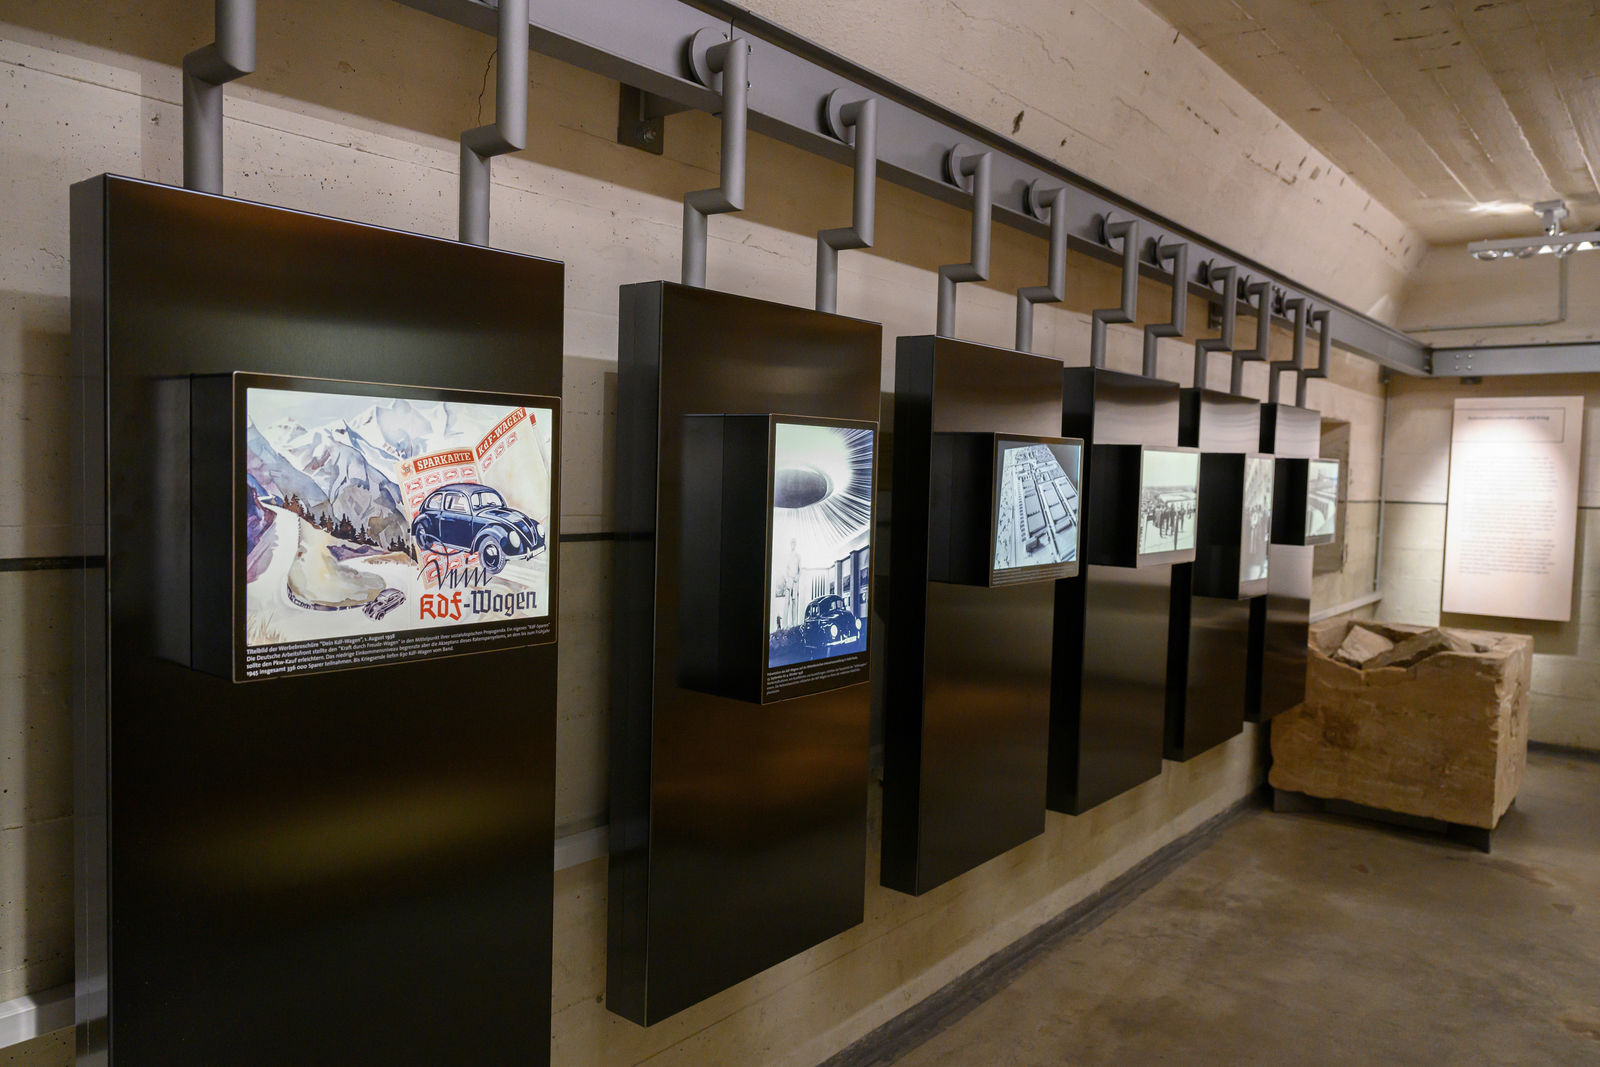 20 Jahre Erinnerungsstätte: Dauerausstellung klärt über die Frühgeschichte von Volkswagen und NS-Zwangsarbeit auf